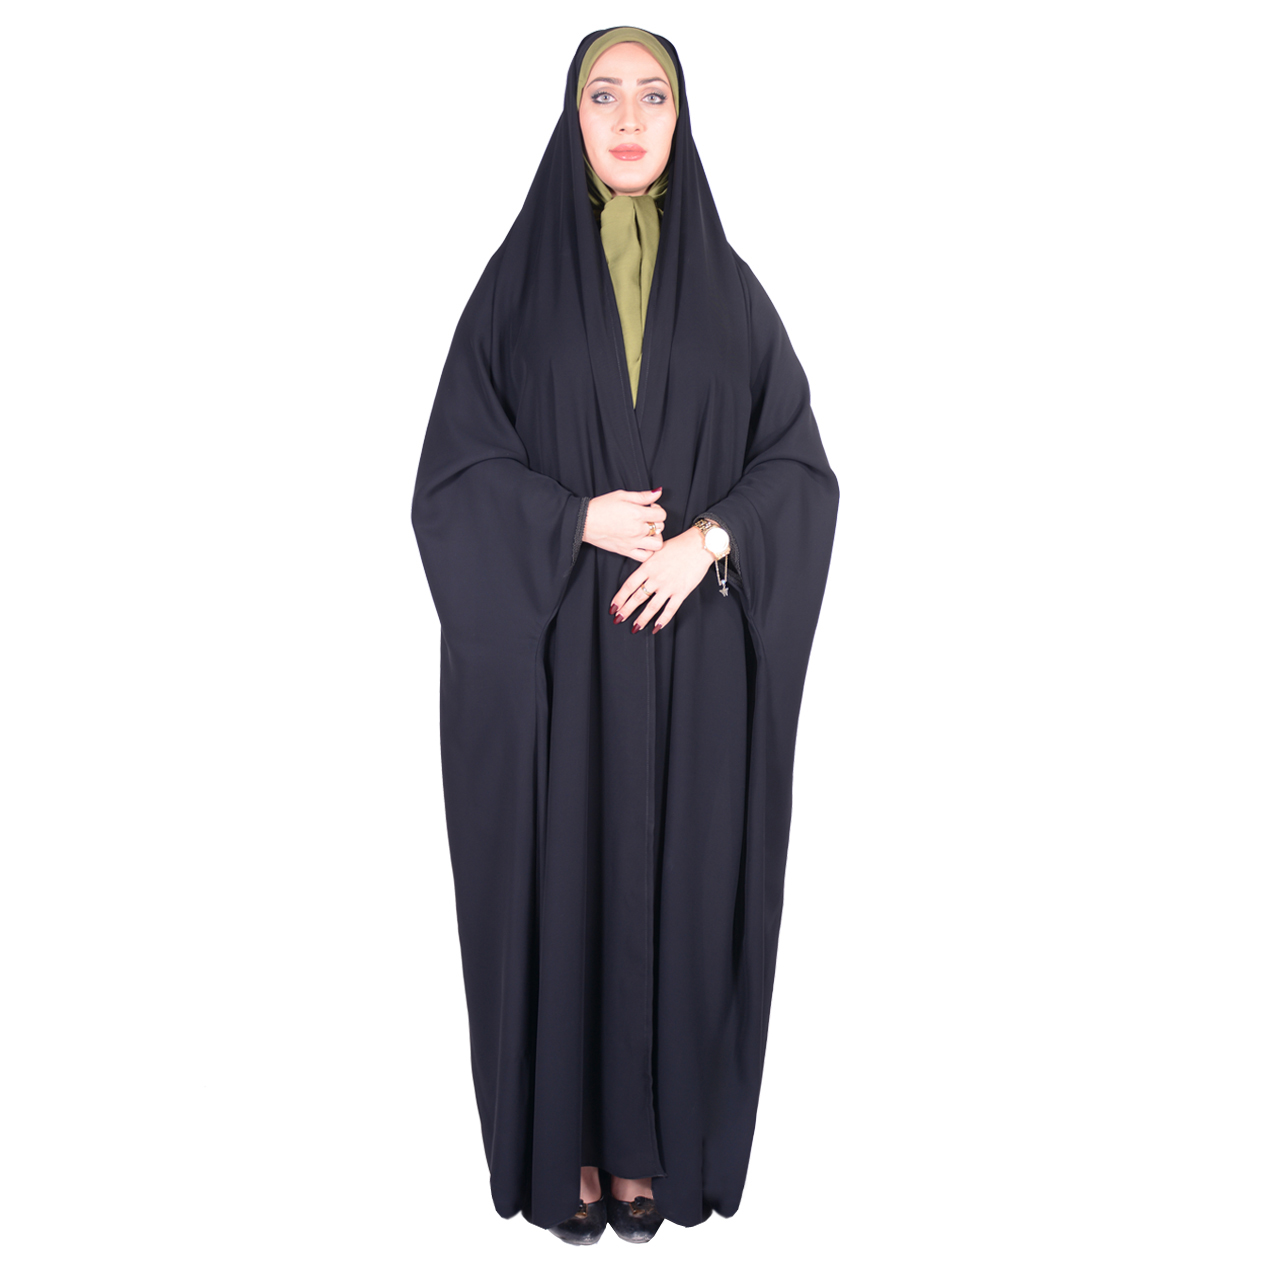 نکته خرید - قیمت روز چادر دانشجویی شهر حجاب مدل بدون مچ کرپ کریستال کد 8011 خرید